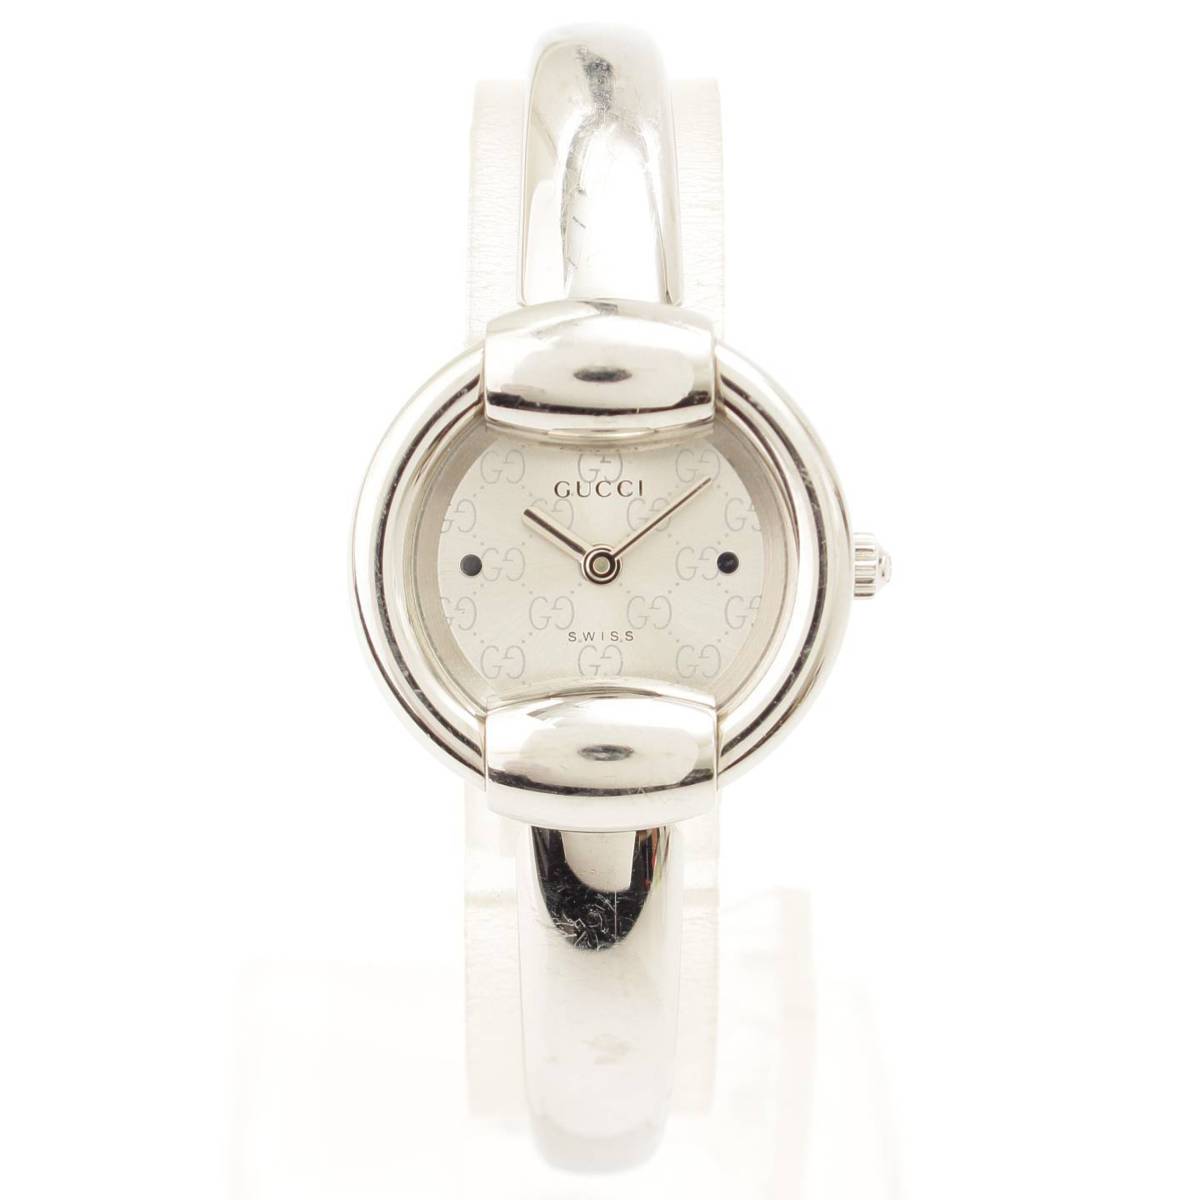 グッチ(Gucci) バングルウオッチ 腕時計 ホワイト シルバー 1400L 電池